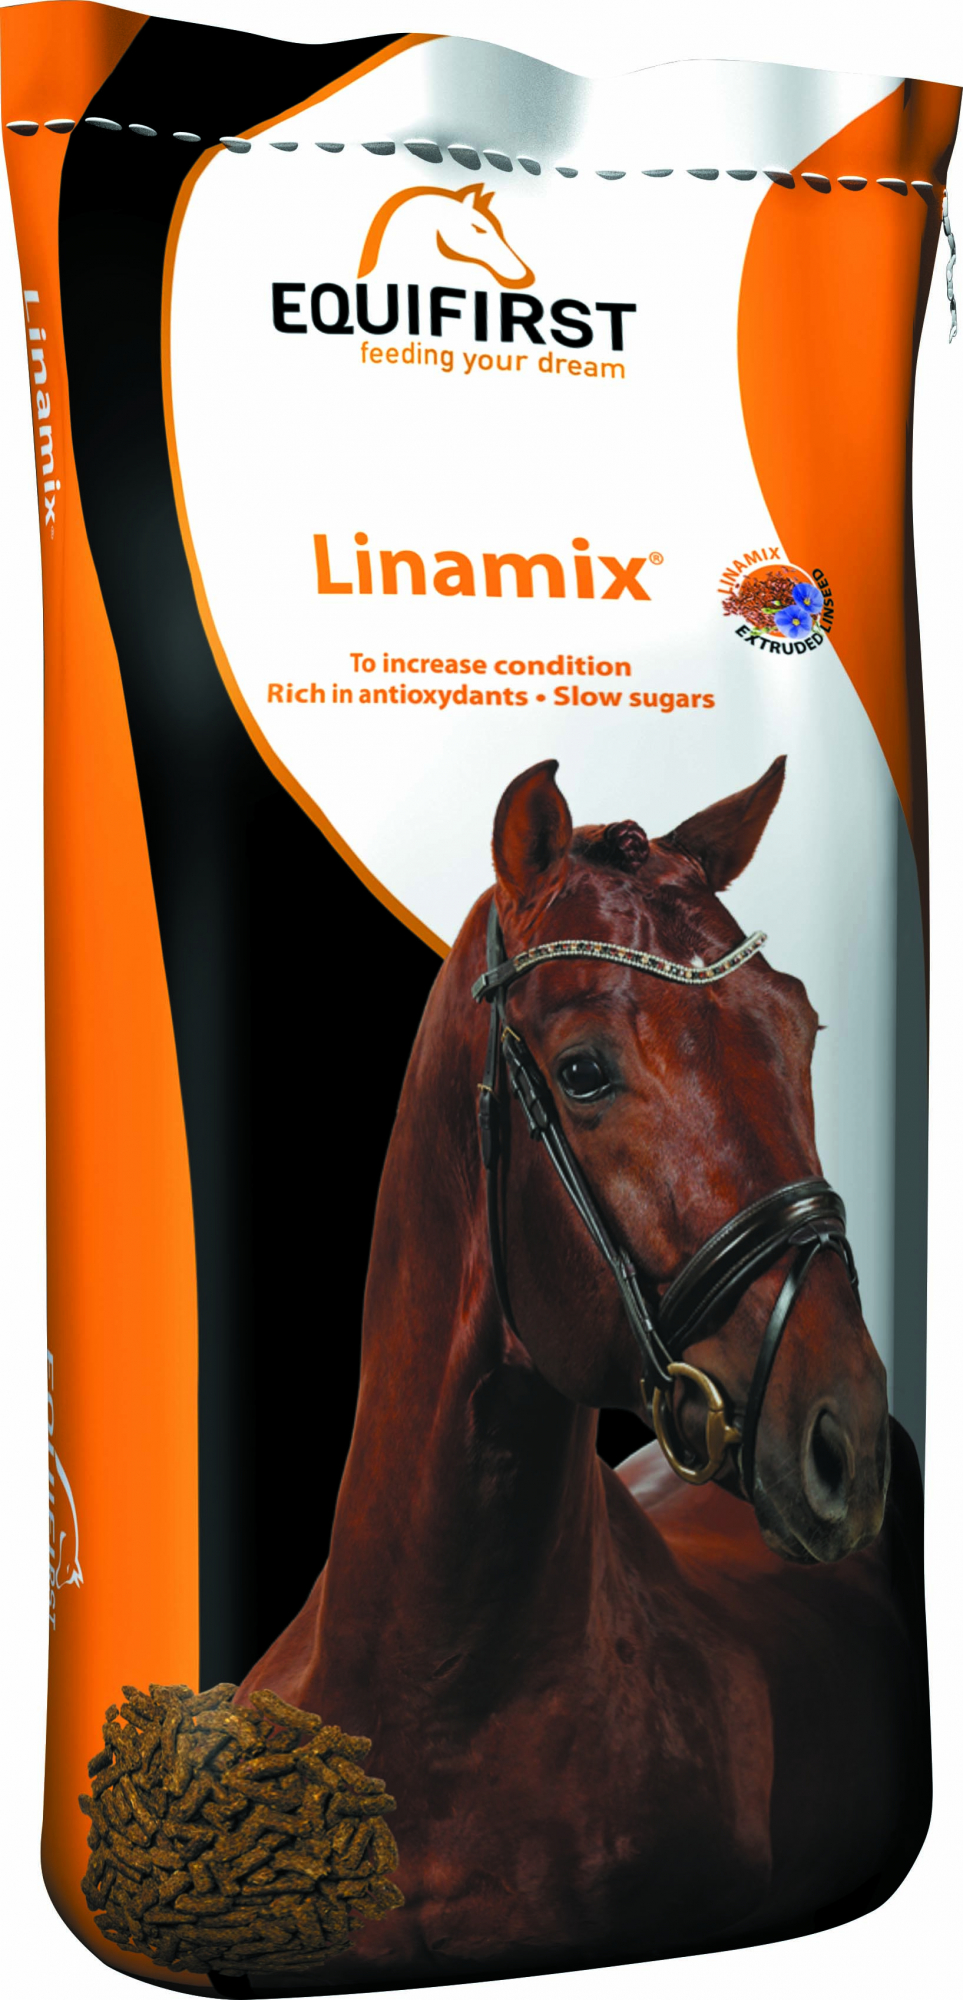 Equifirst Linamix integratore alimentare per migliorare la condizione del cavallo